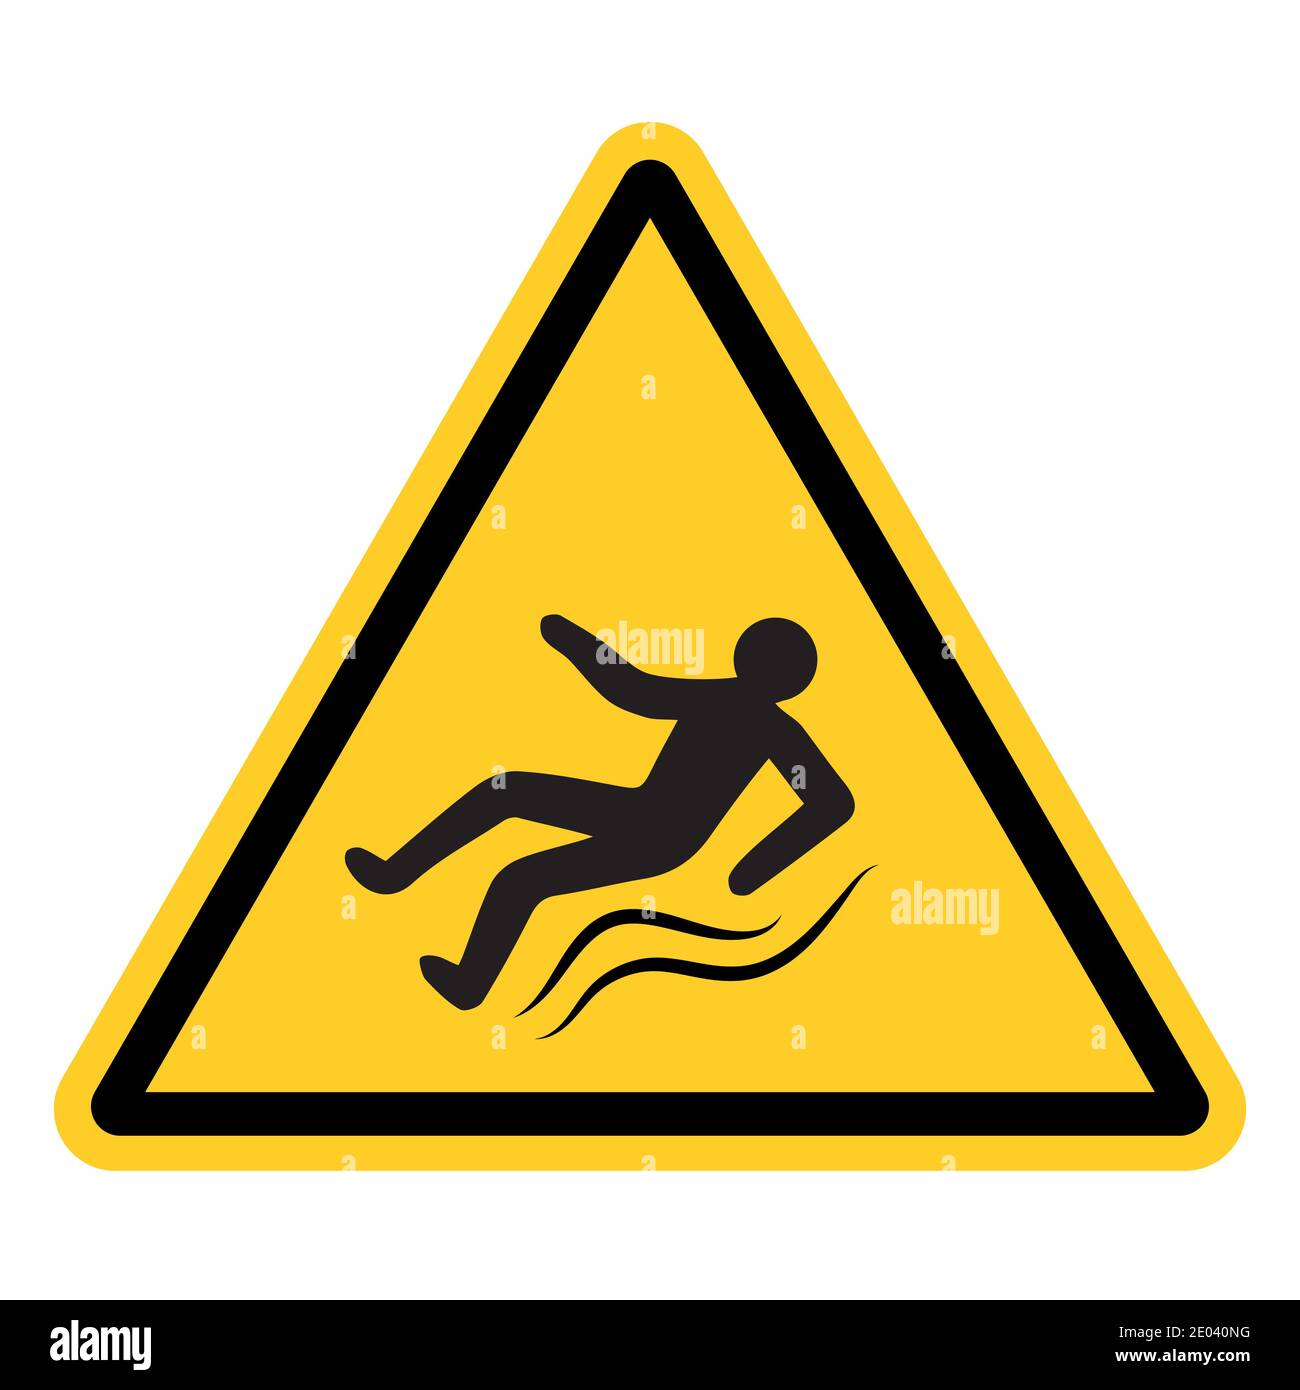 Segnale di avvertimento giallo con una persona che scivola, segnale vettoriale di ghiaccio, strada sdrucciolevole, avvertenze di pericolo per lesioni su marciapiede sdrucciolevole Illustrazione Vettoriale